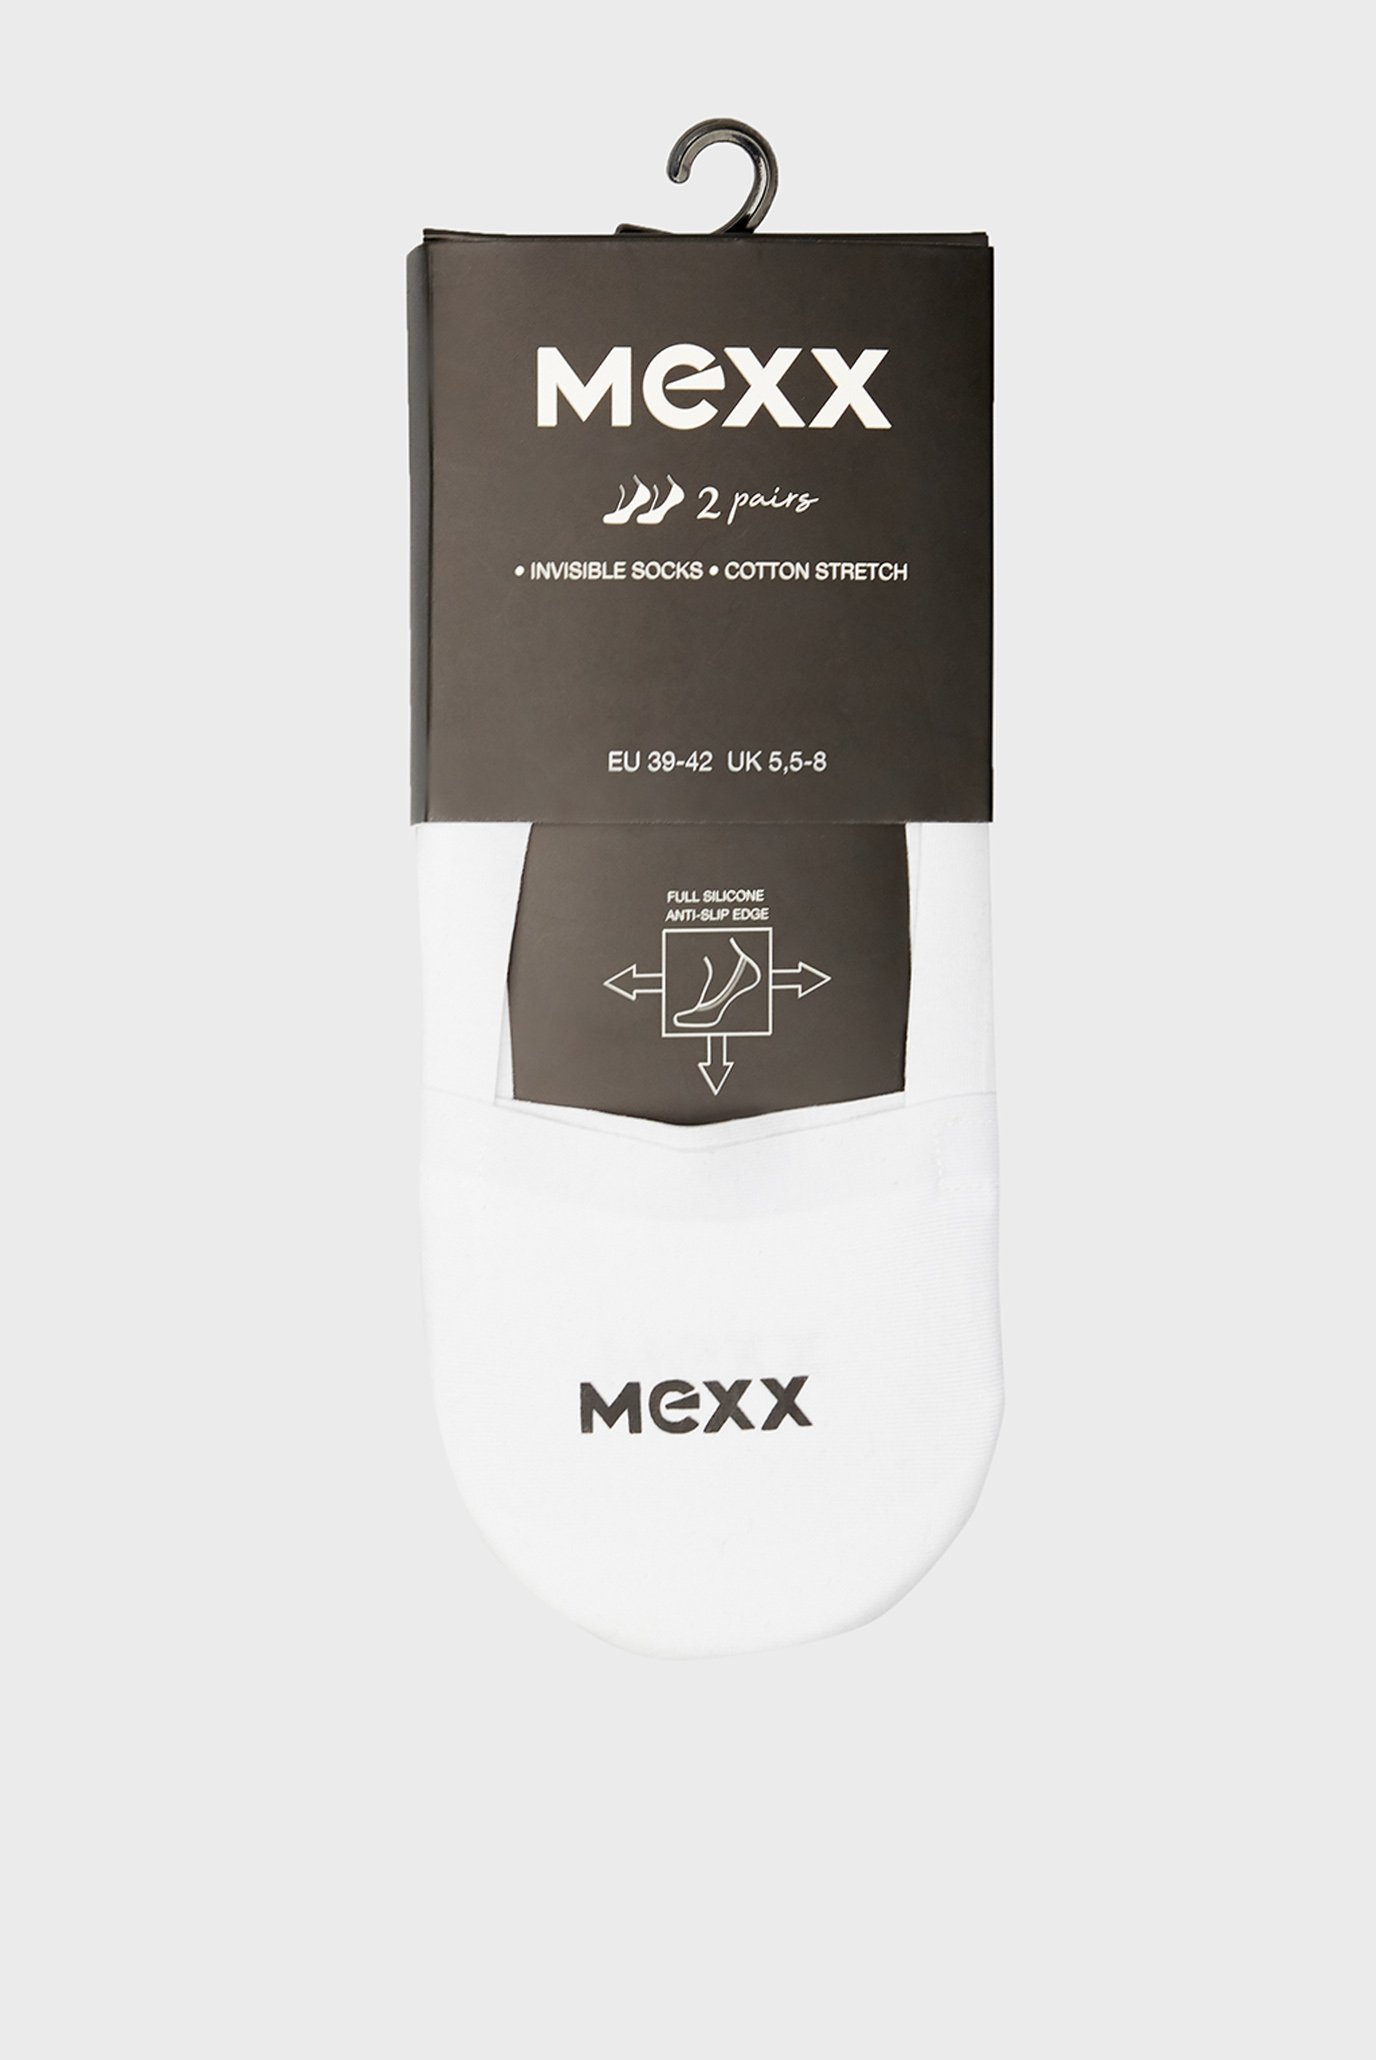 Білі сліди (2 пари) MEXX Invisible Socks 1